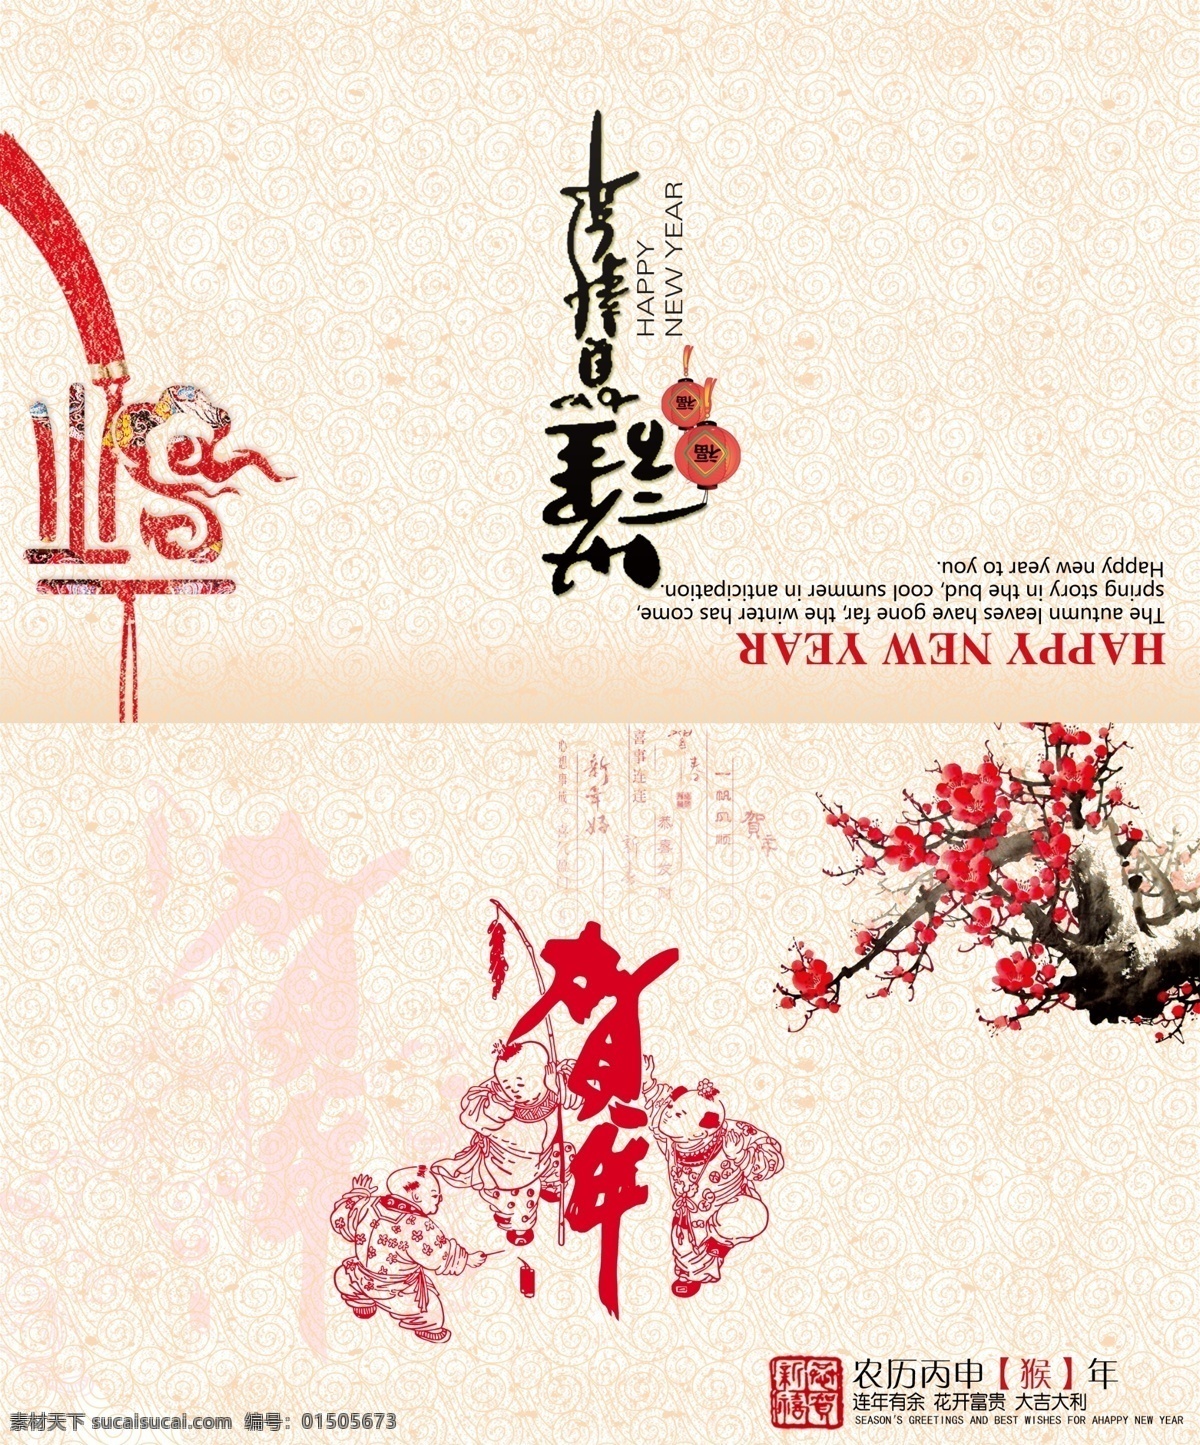 新年 贺卡 福 红色 喜庆 新年贺卡 梅花 水墨 中国风 水墨元素 包装 文化艺术 节日庆祝